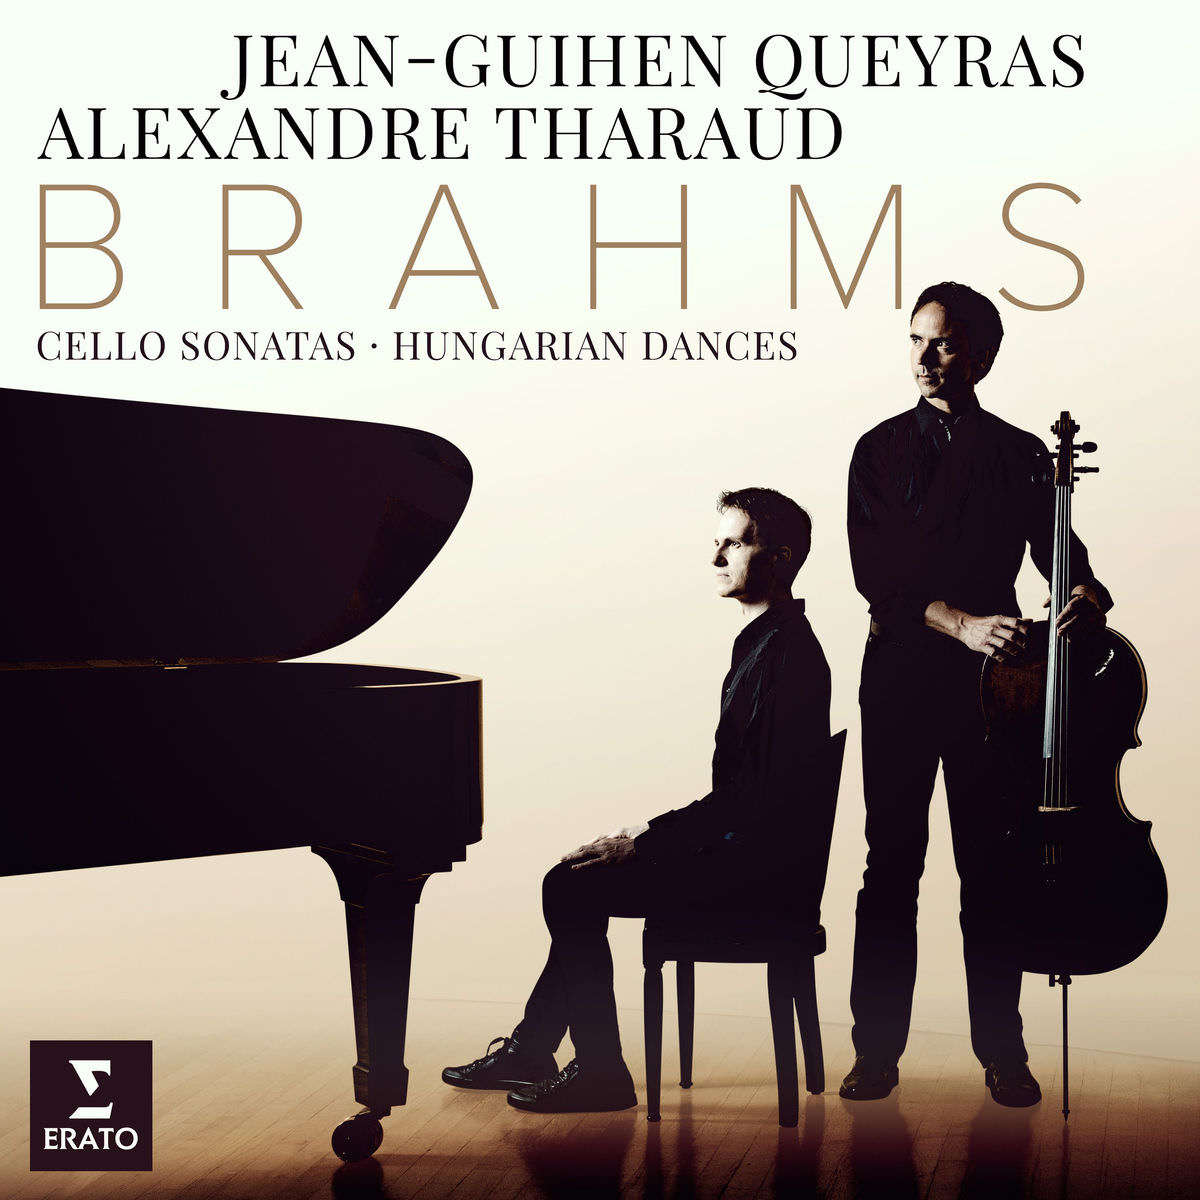 Jean-Guihen Queyras & Alexandre Tharaud - Brahms: Cello Sonatas & Hungarian Dances (2018) [Qobuz FLAC 24bit/96kHz]